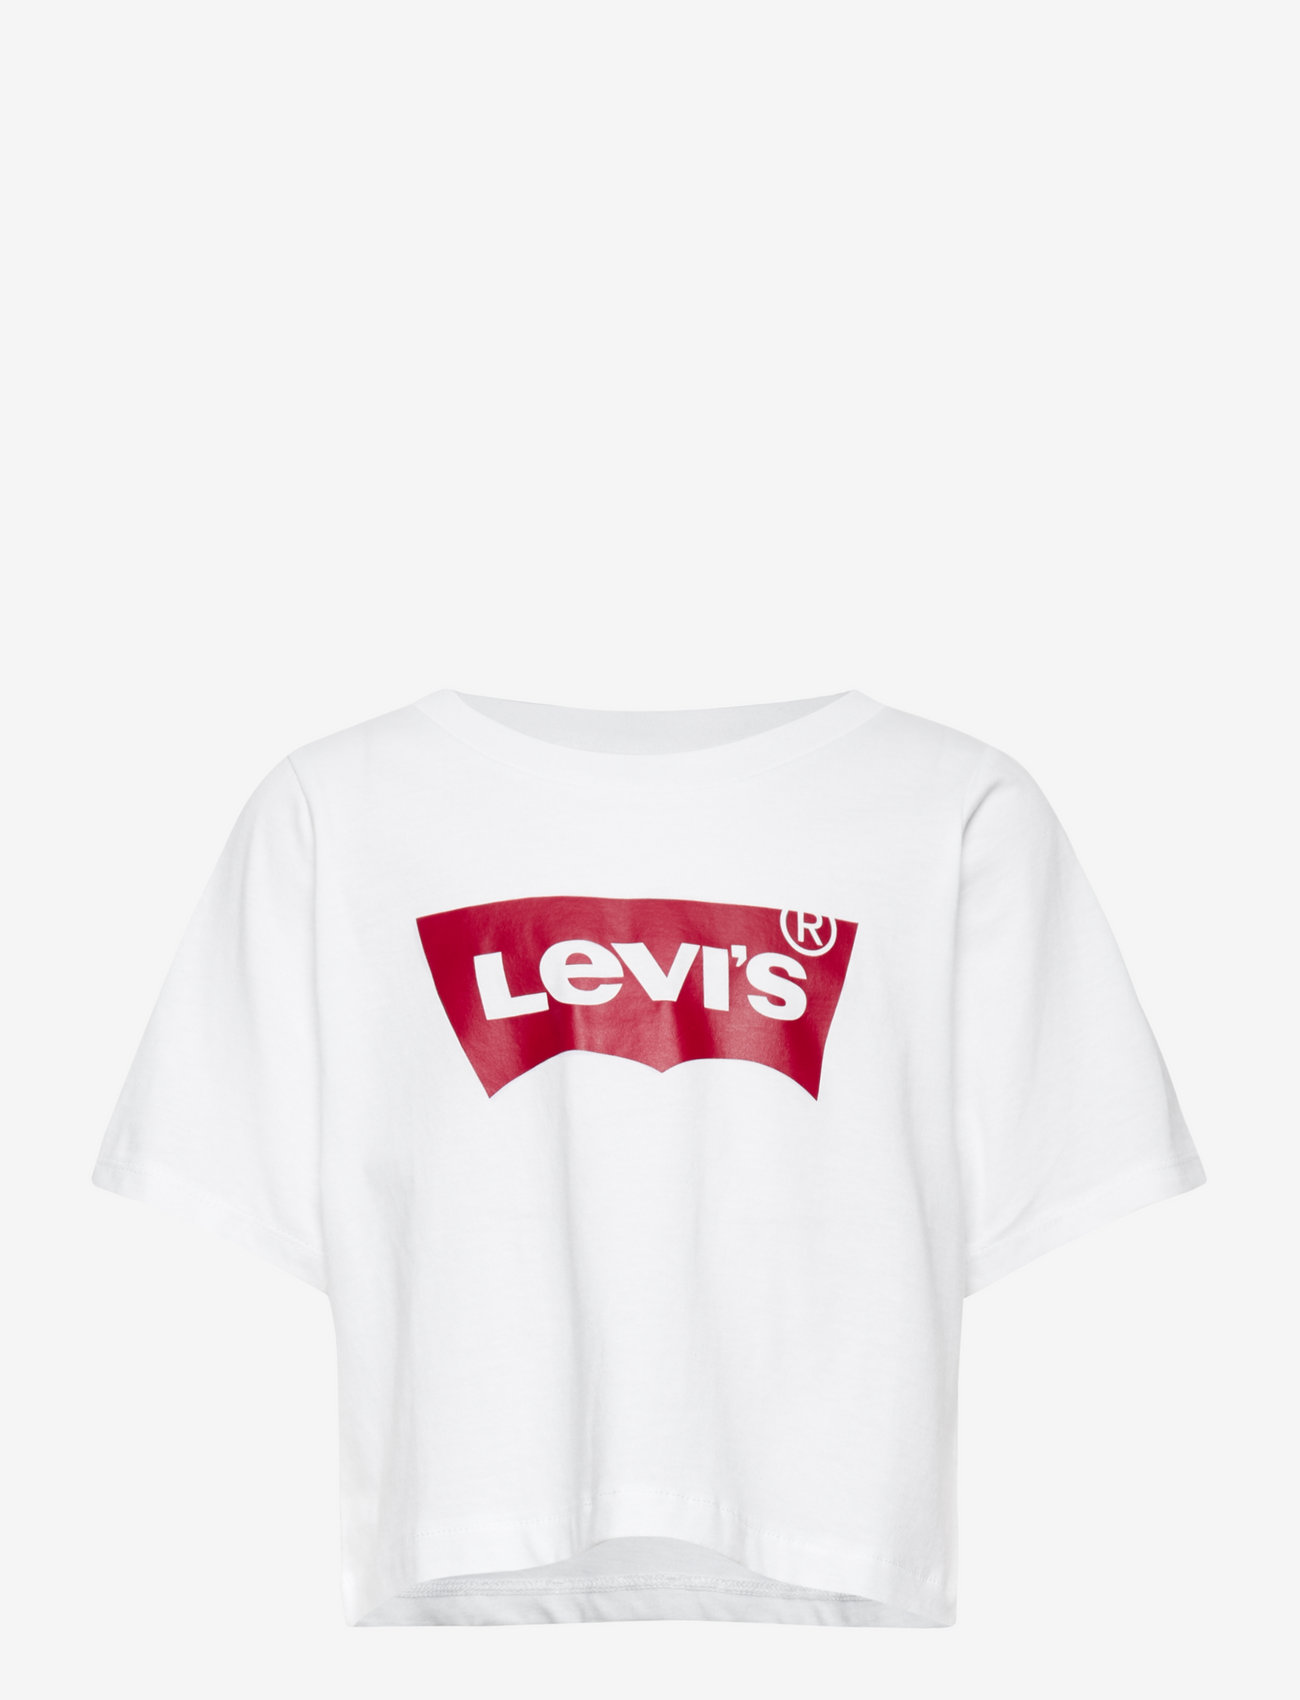 levis crop tops